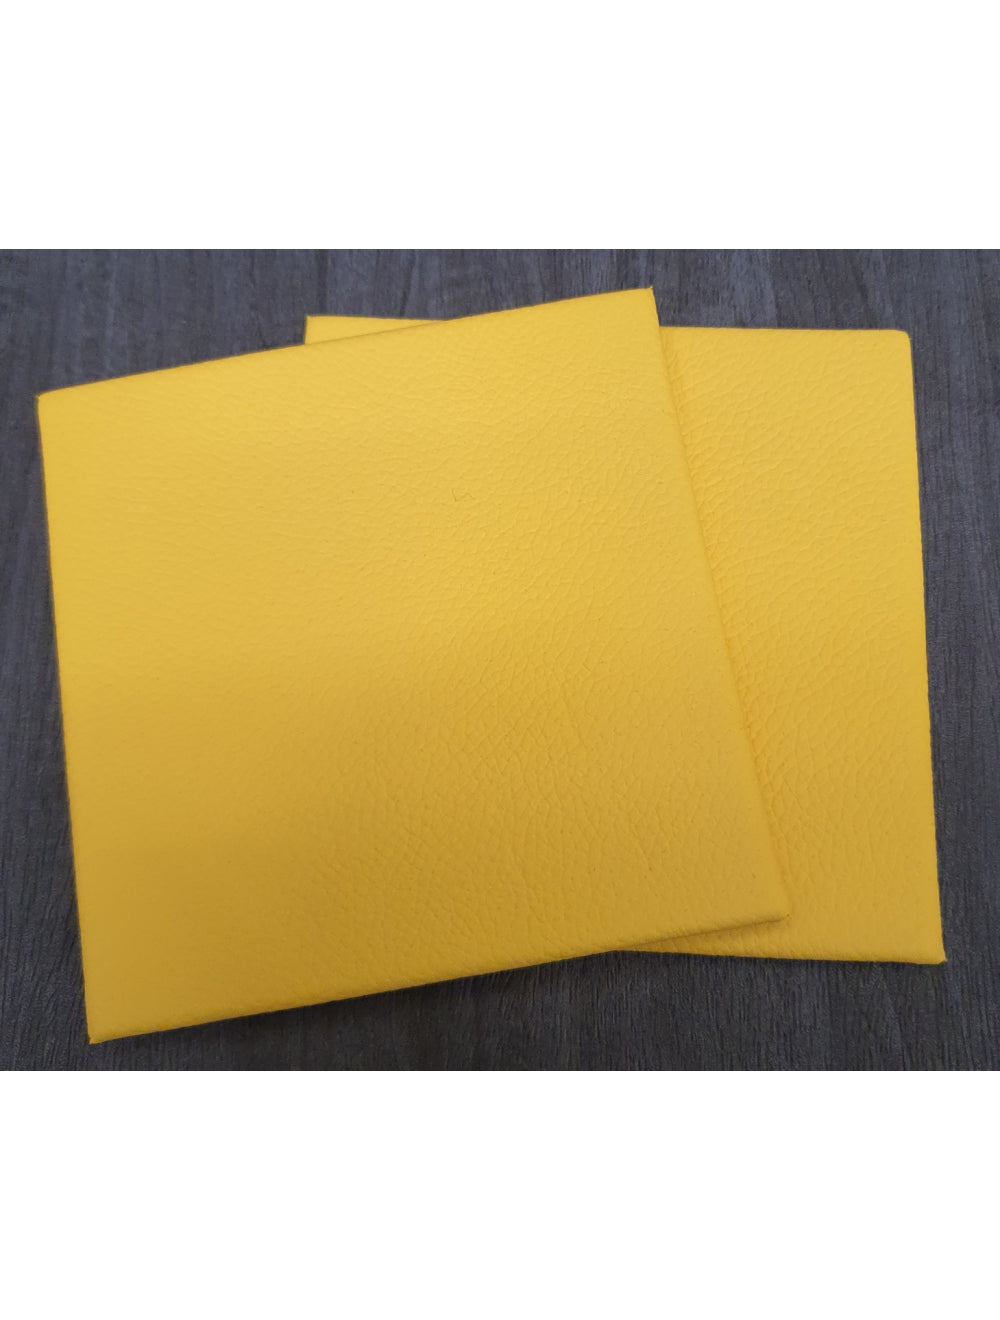 Κίτρινο δερμάτινο σουβέρ Shelly- 10cm Sq (αντικείμενο πώλησης)